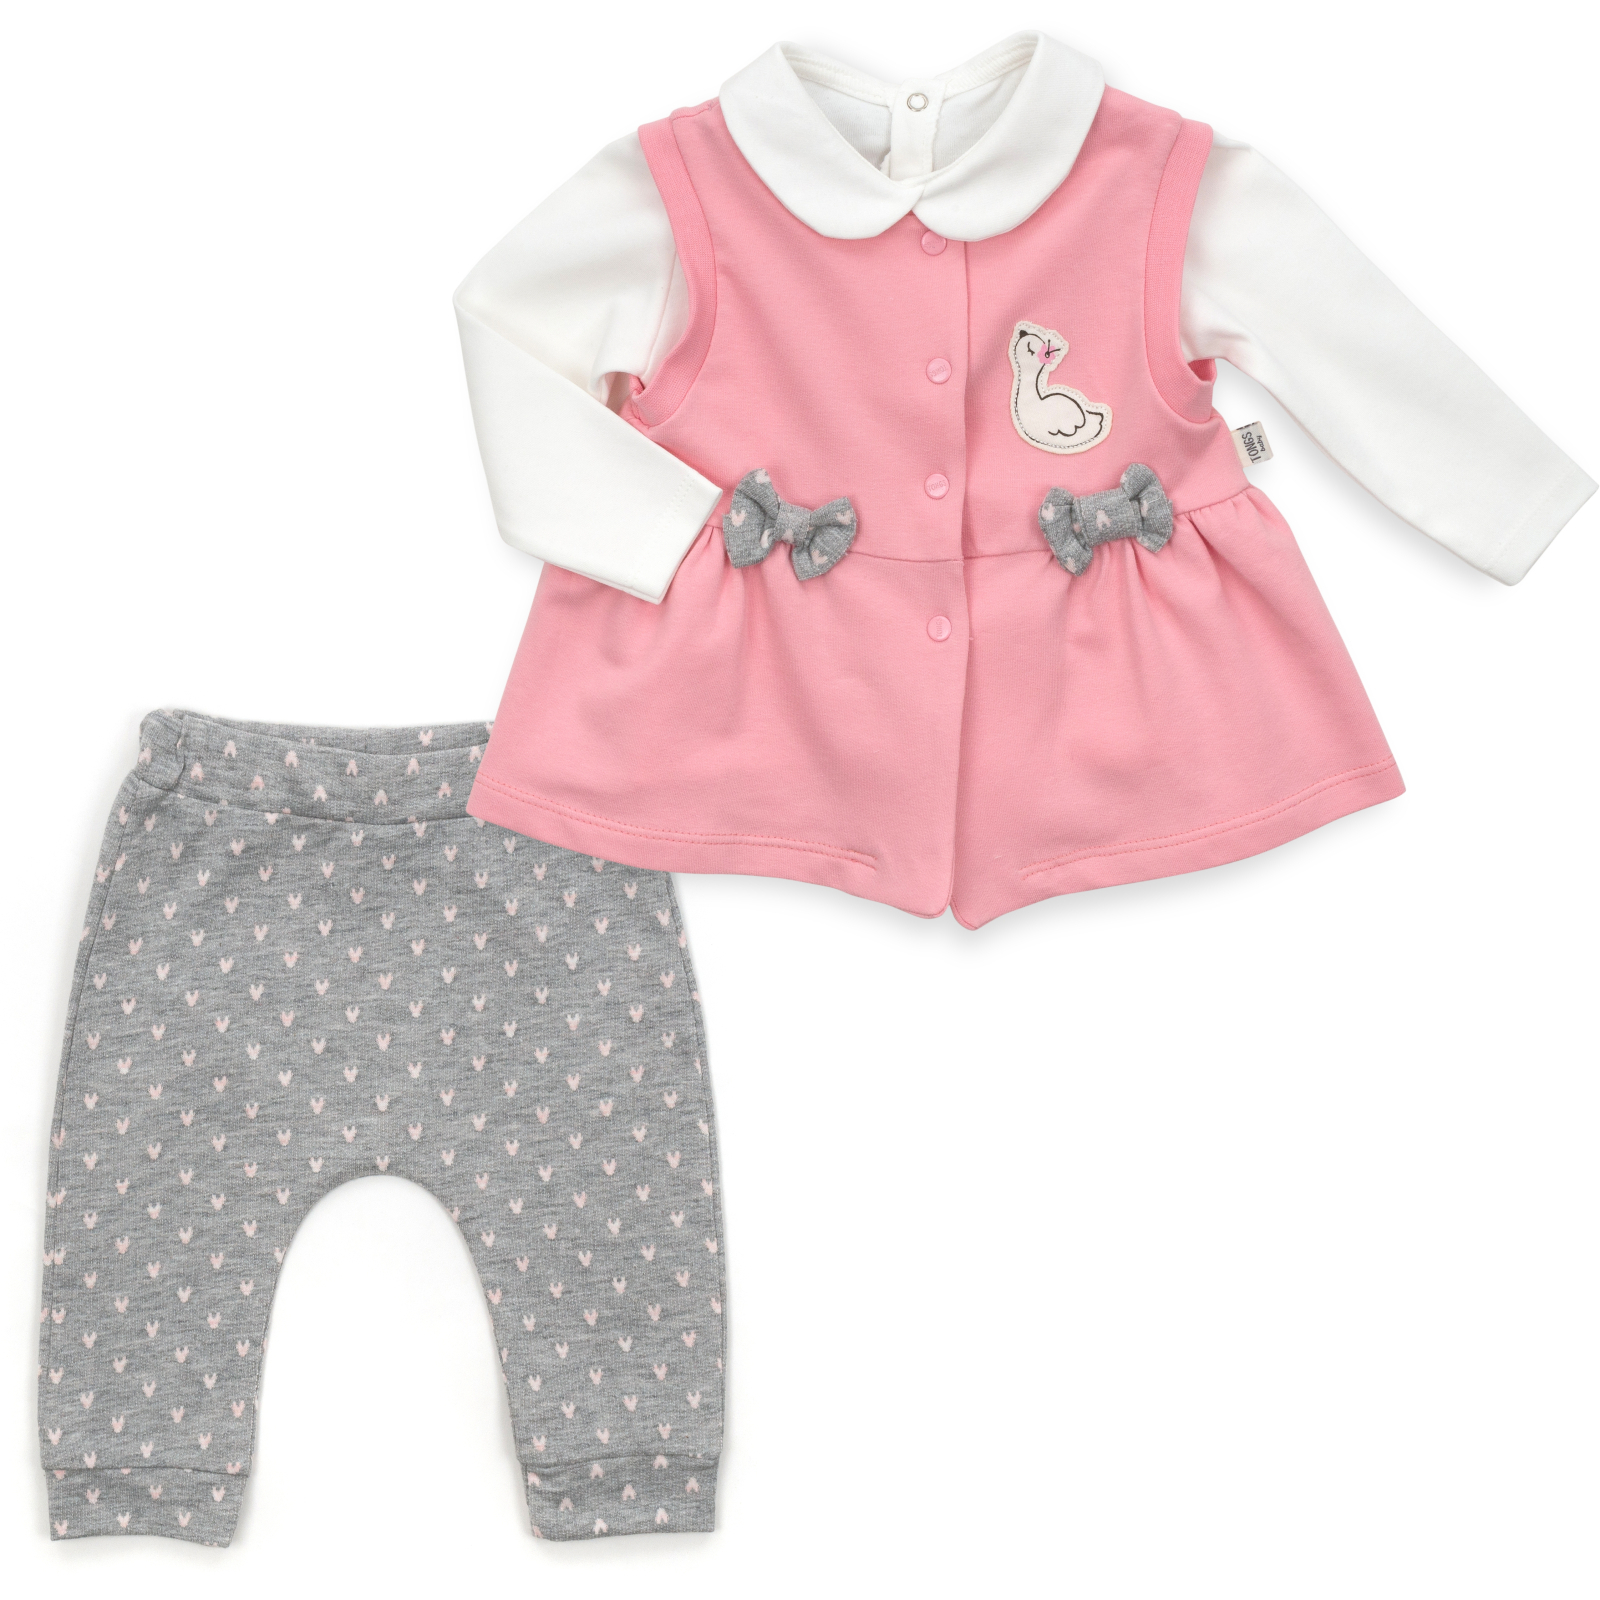 Набор детской одежды Tongs с бантиками (2624-86G-pink)